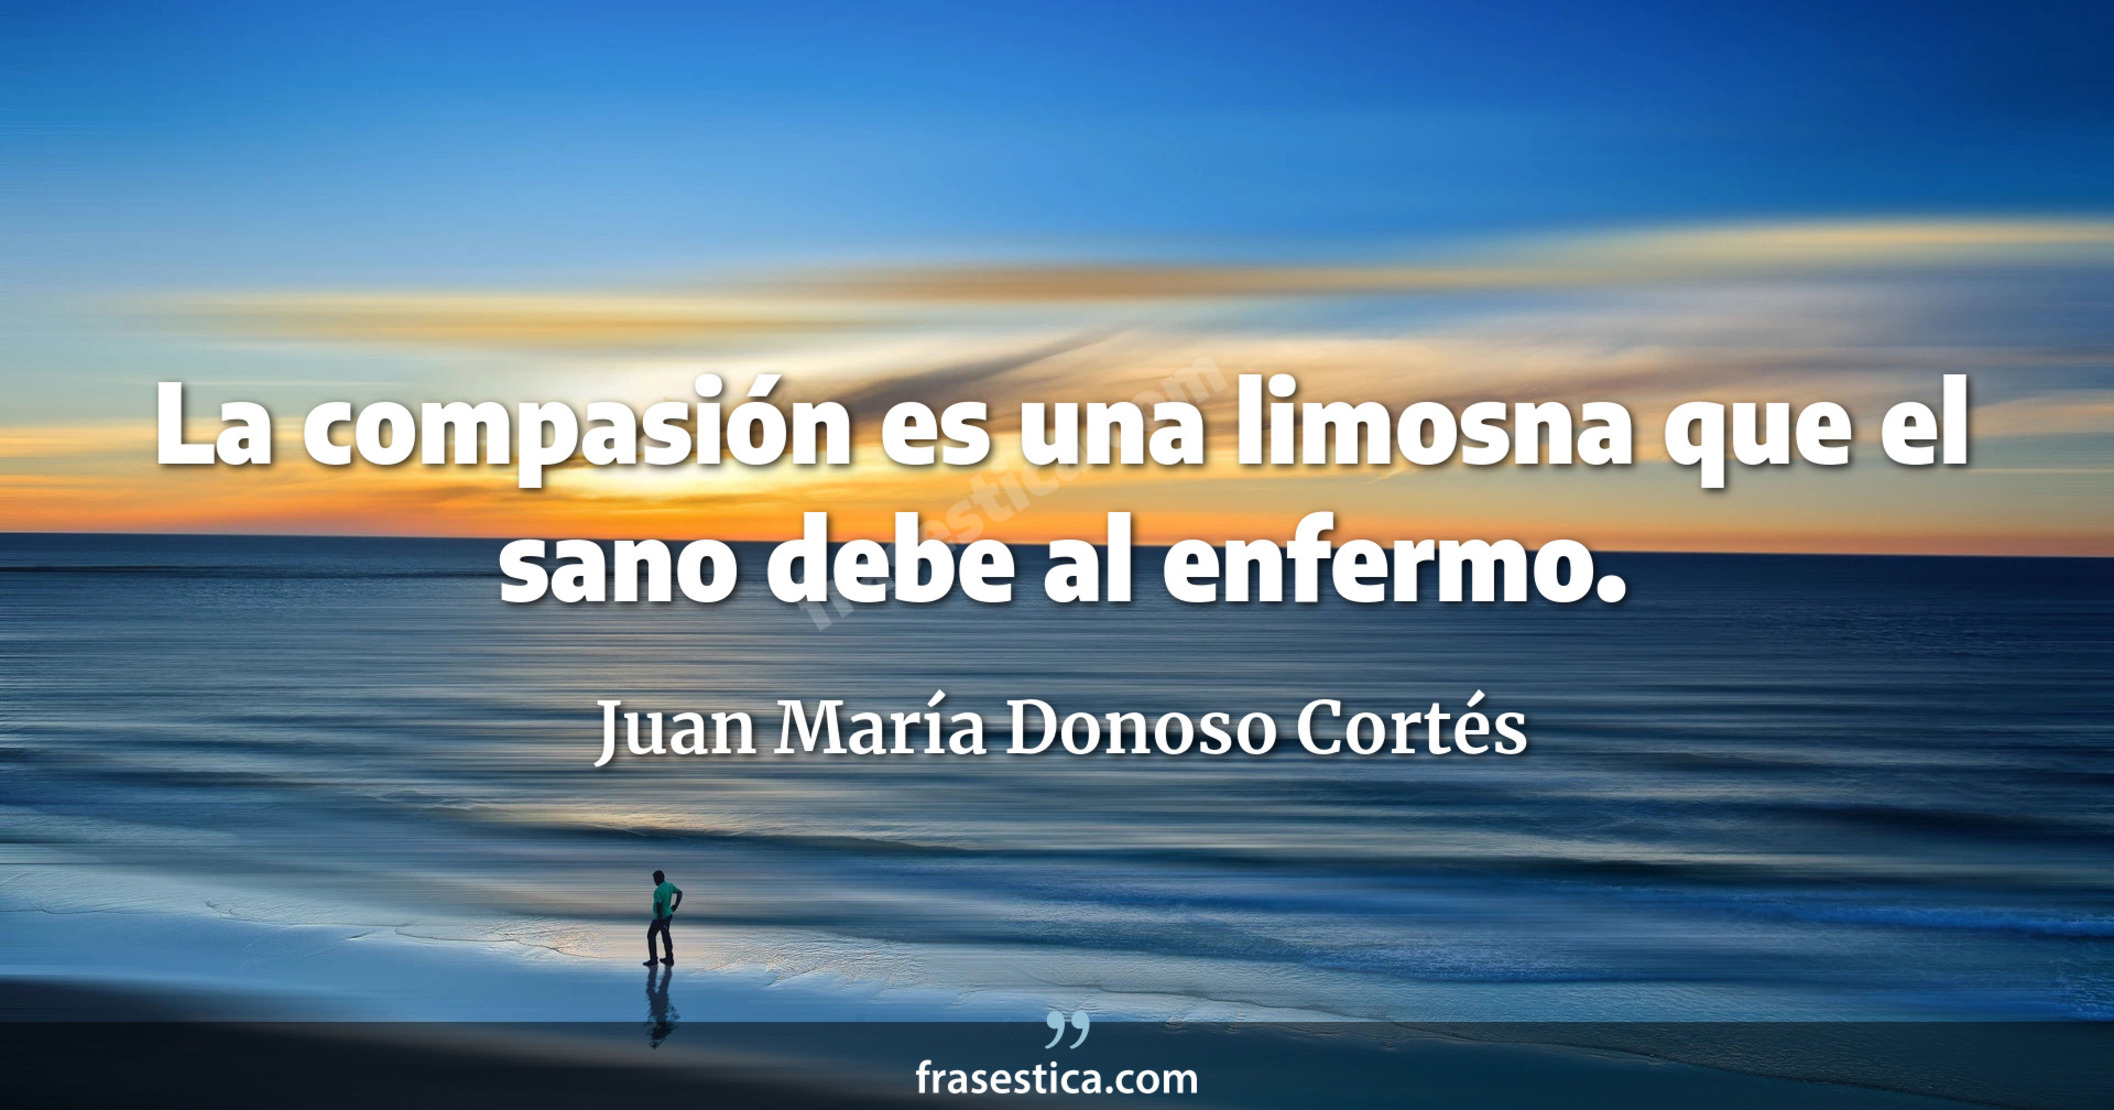 La compasión es una limosna que el sano debe al enfermo. - Juan María Donoso Cortés